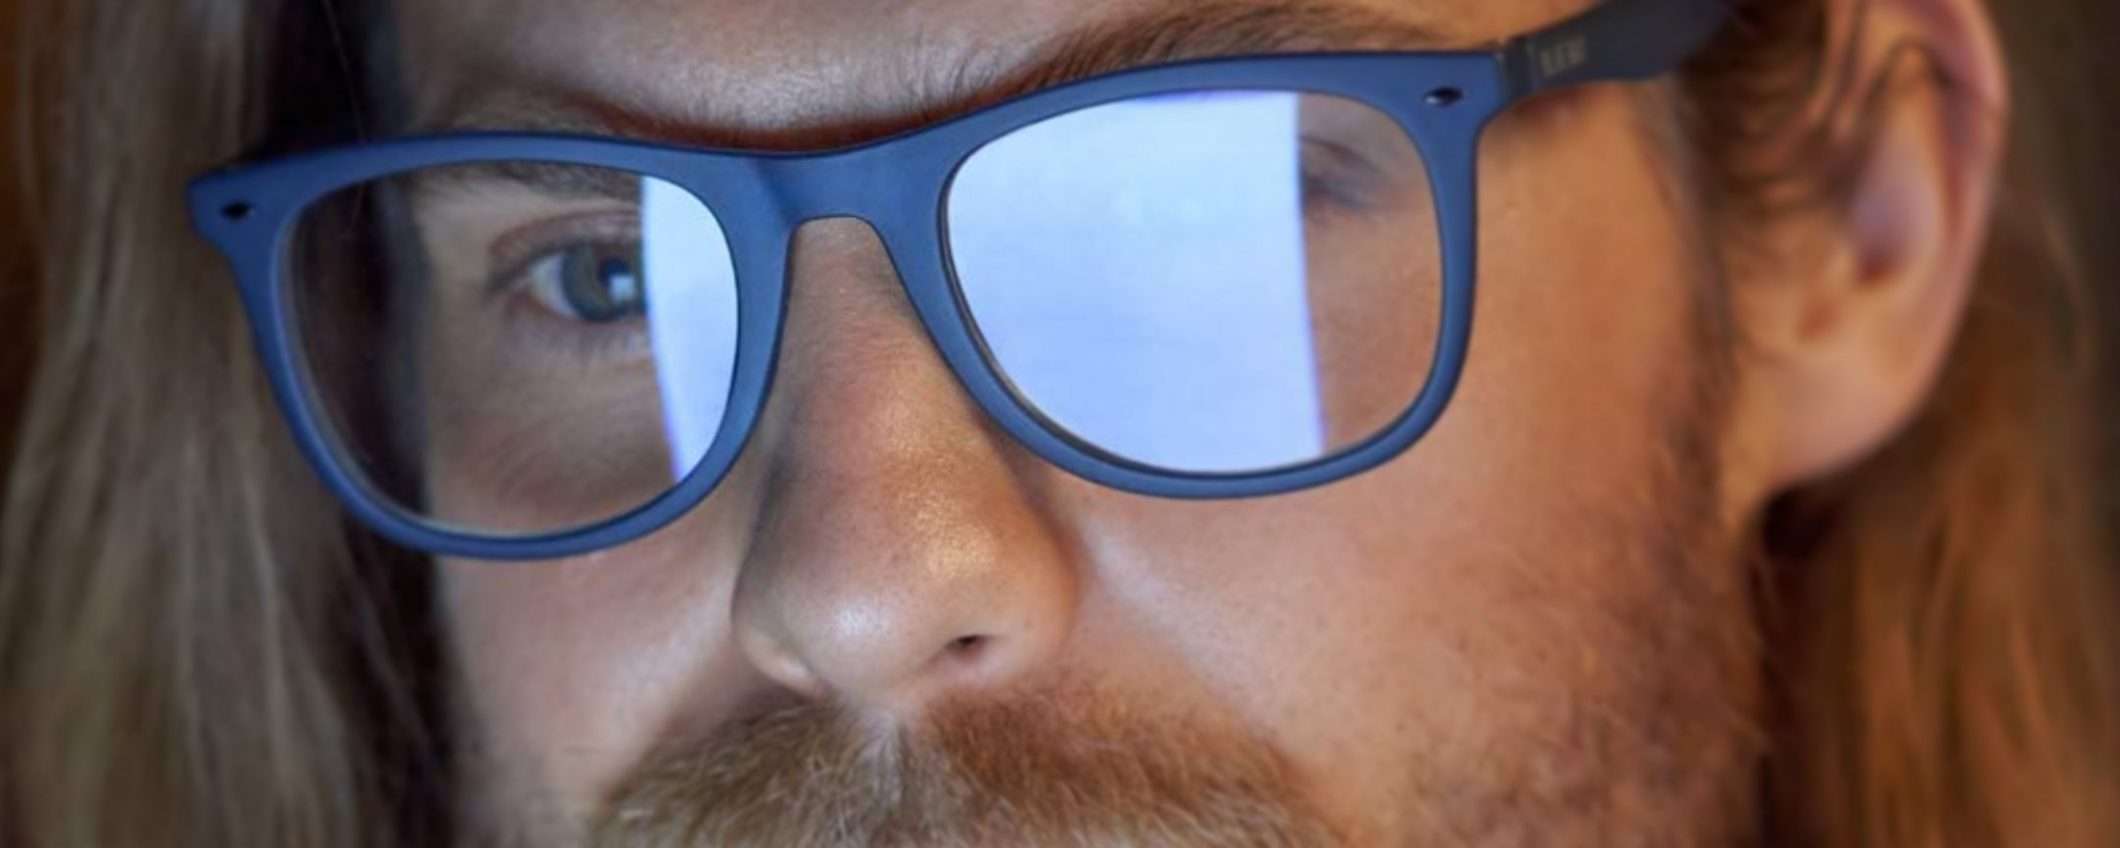 Occhiali anti-luce blu: la tua vista vale più di 15€